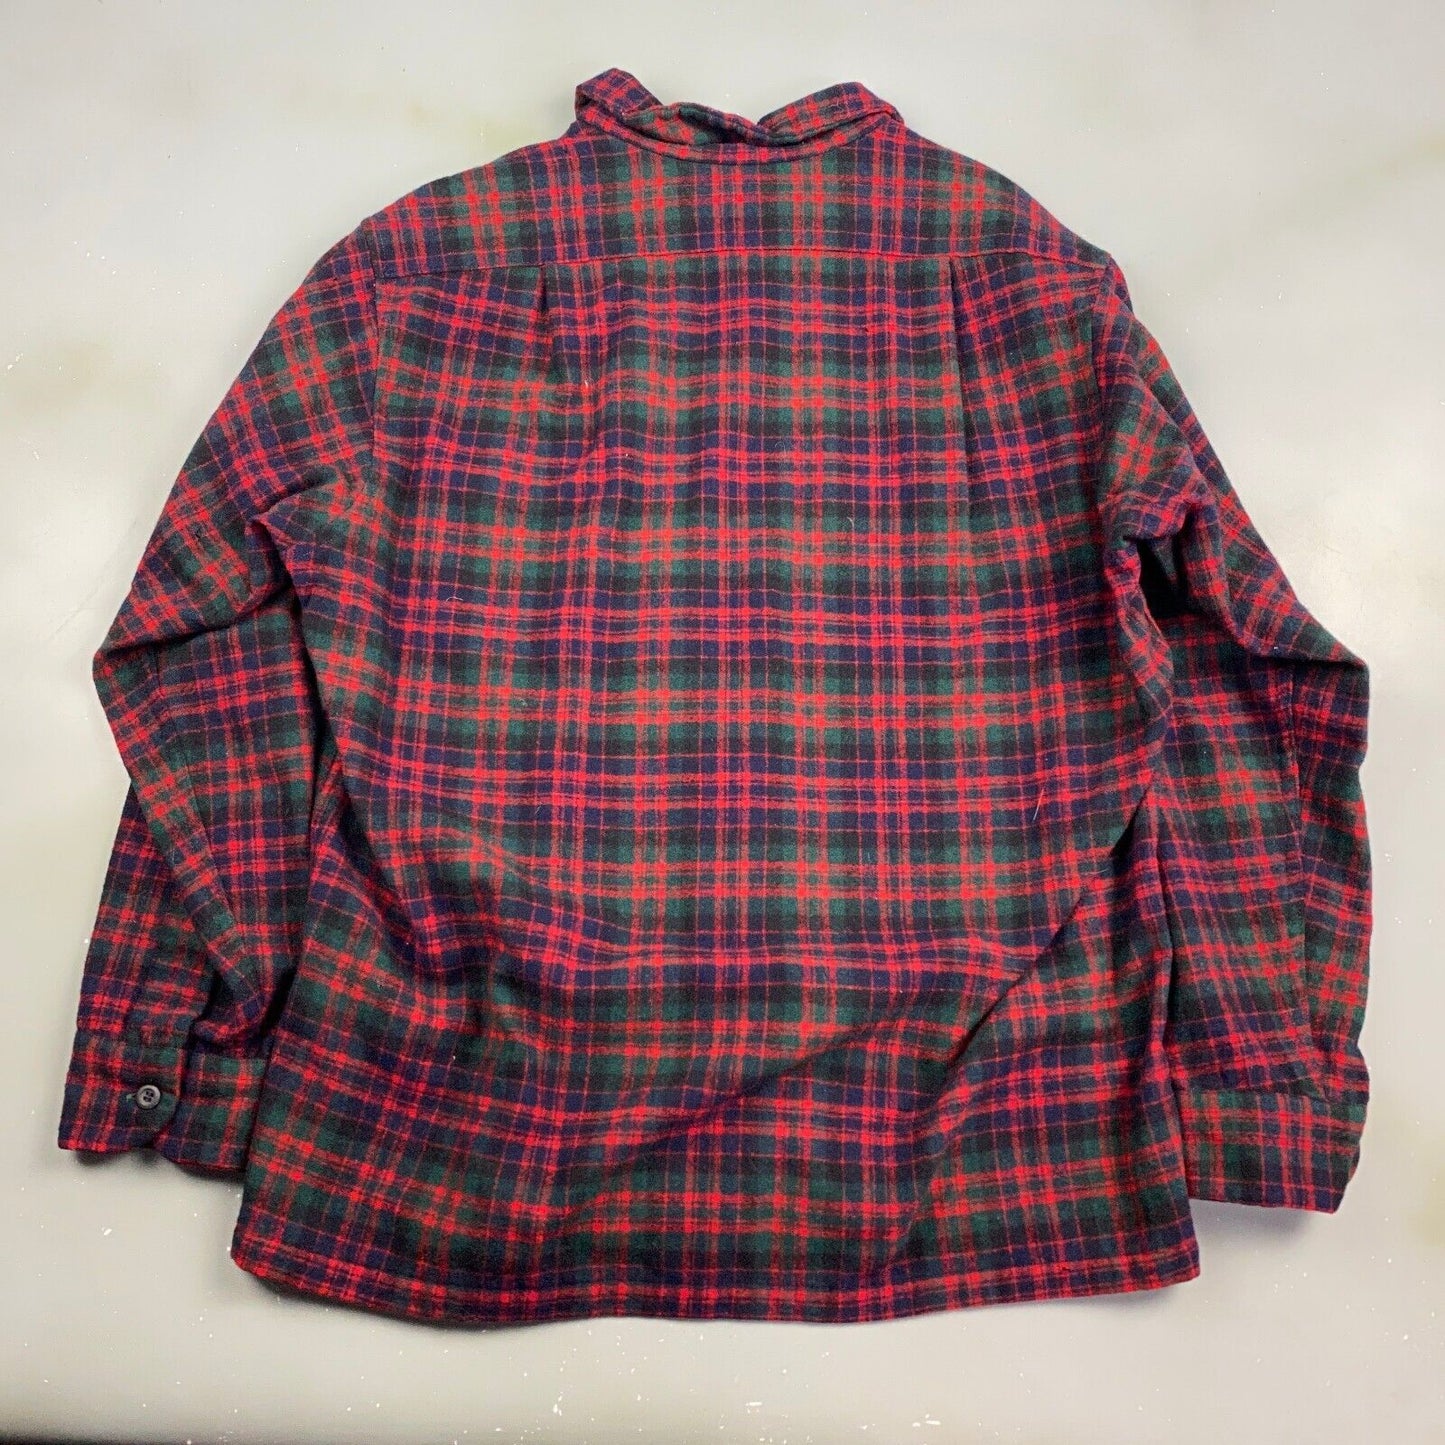 VINTAGE 90s Pendleton Wool Plaid Flannel Button Up Shirt sz Large Adult